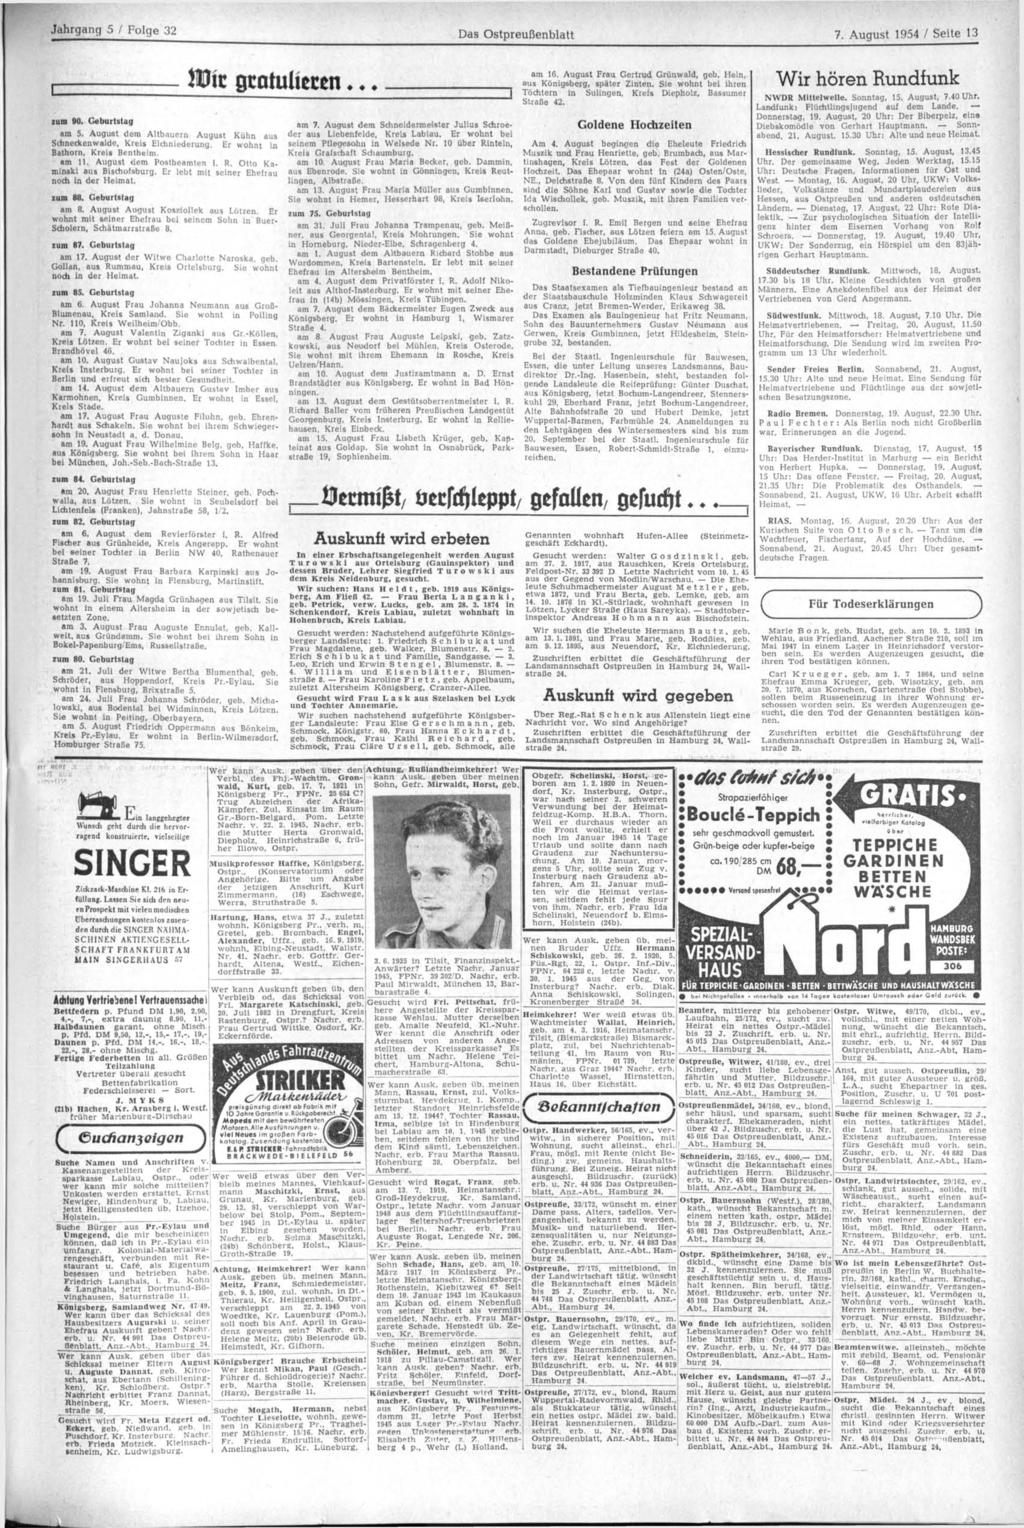 Jahrgang 5 / Folge 32 Das Ostpreußenblatt 7. August 1954 / Seite 13 zum 90. Geburtstag Mi am 5. August dem Altbauern August Kühn aus Schneckenwalde, Kreis Elchniederung.